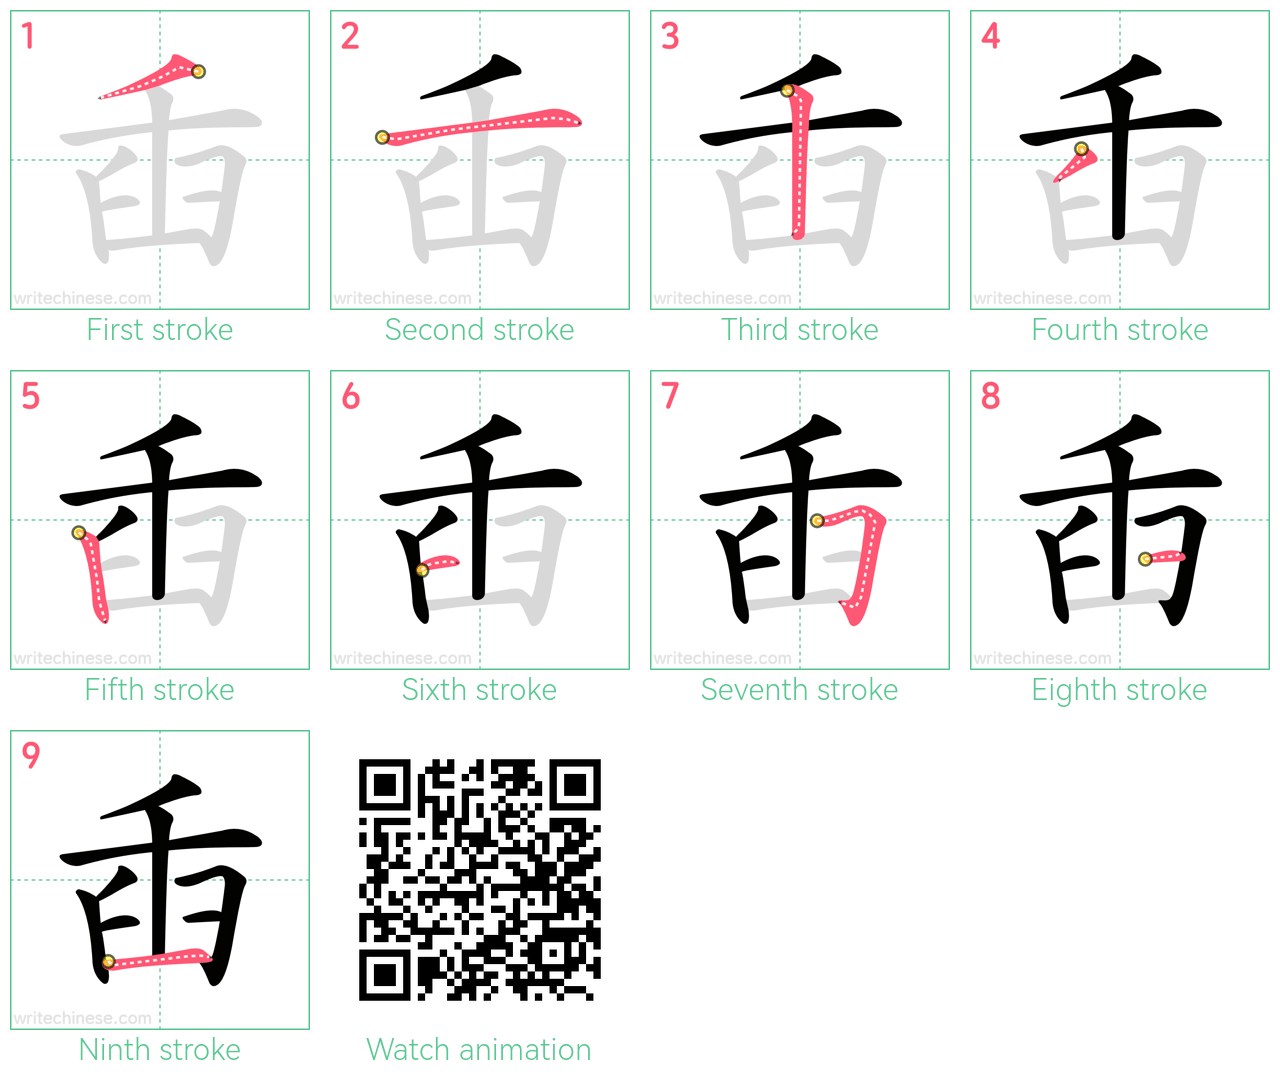 臿 step-by-step stroke order diagrams